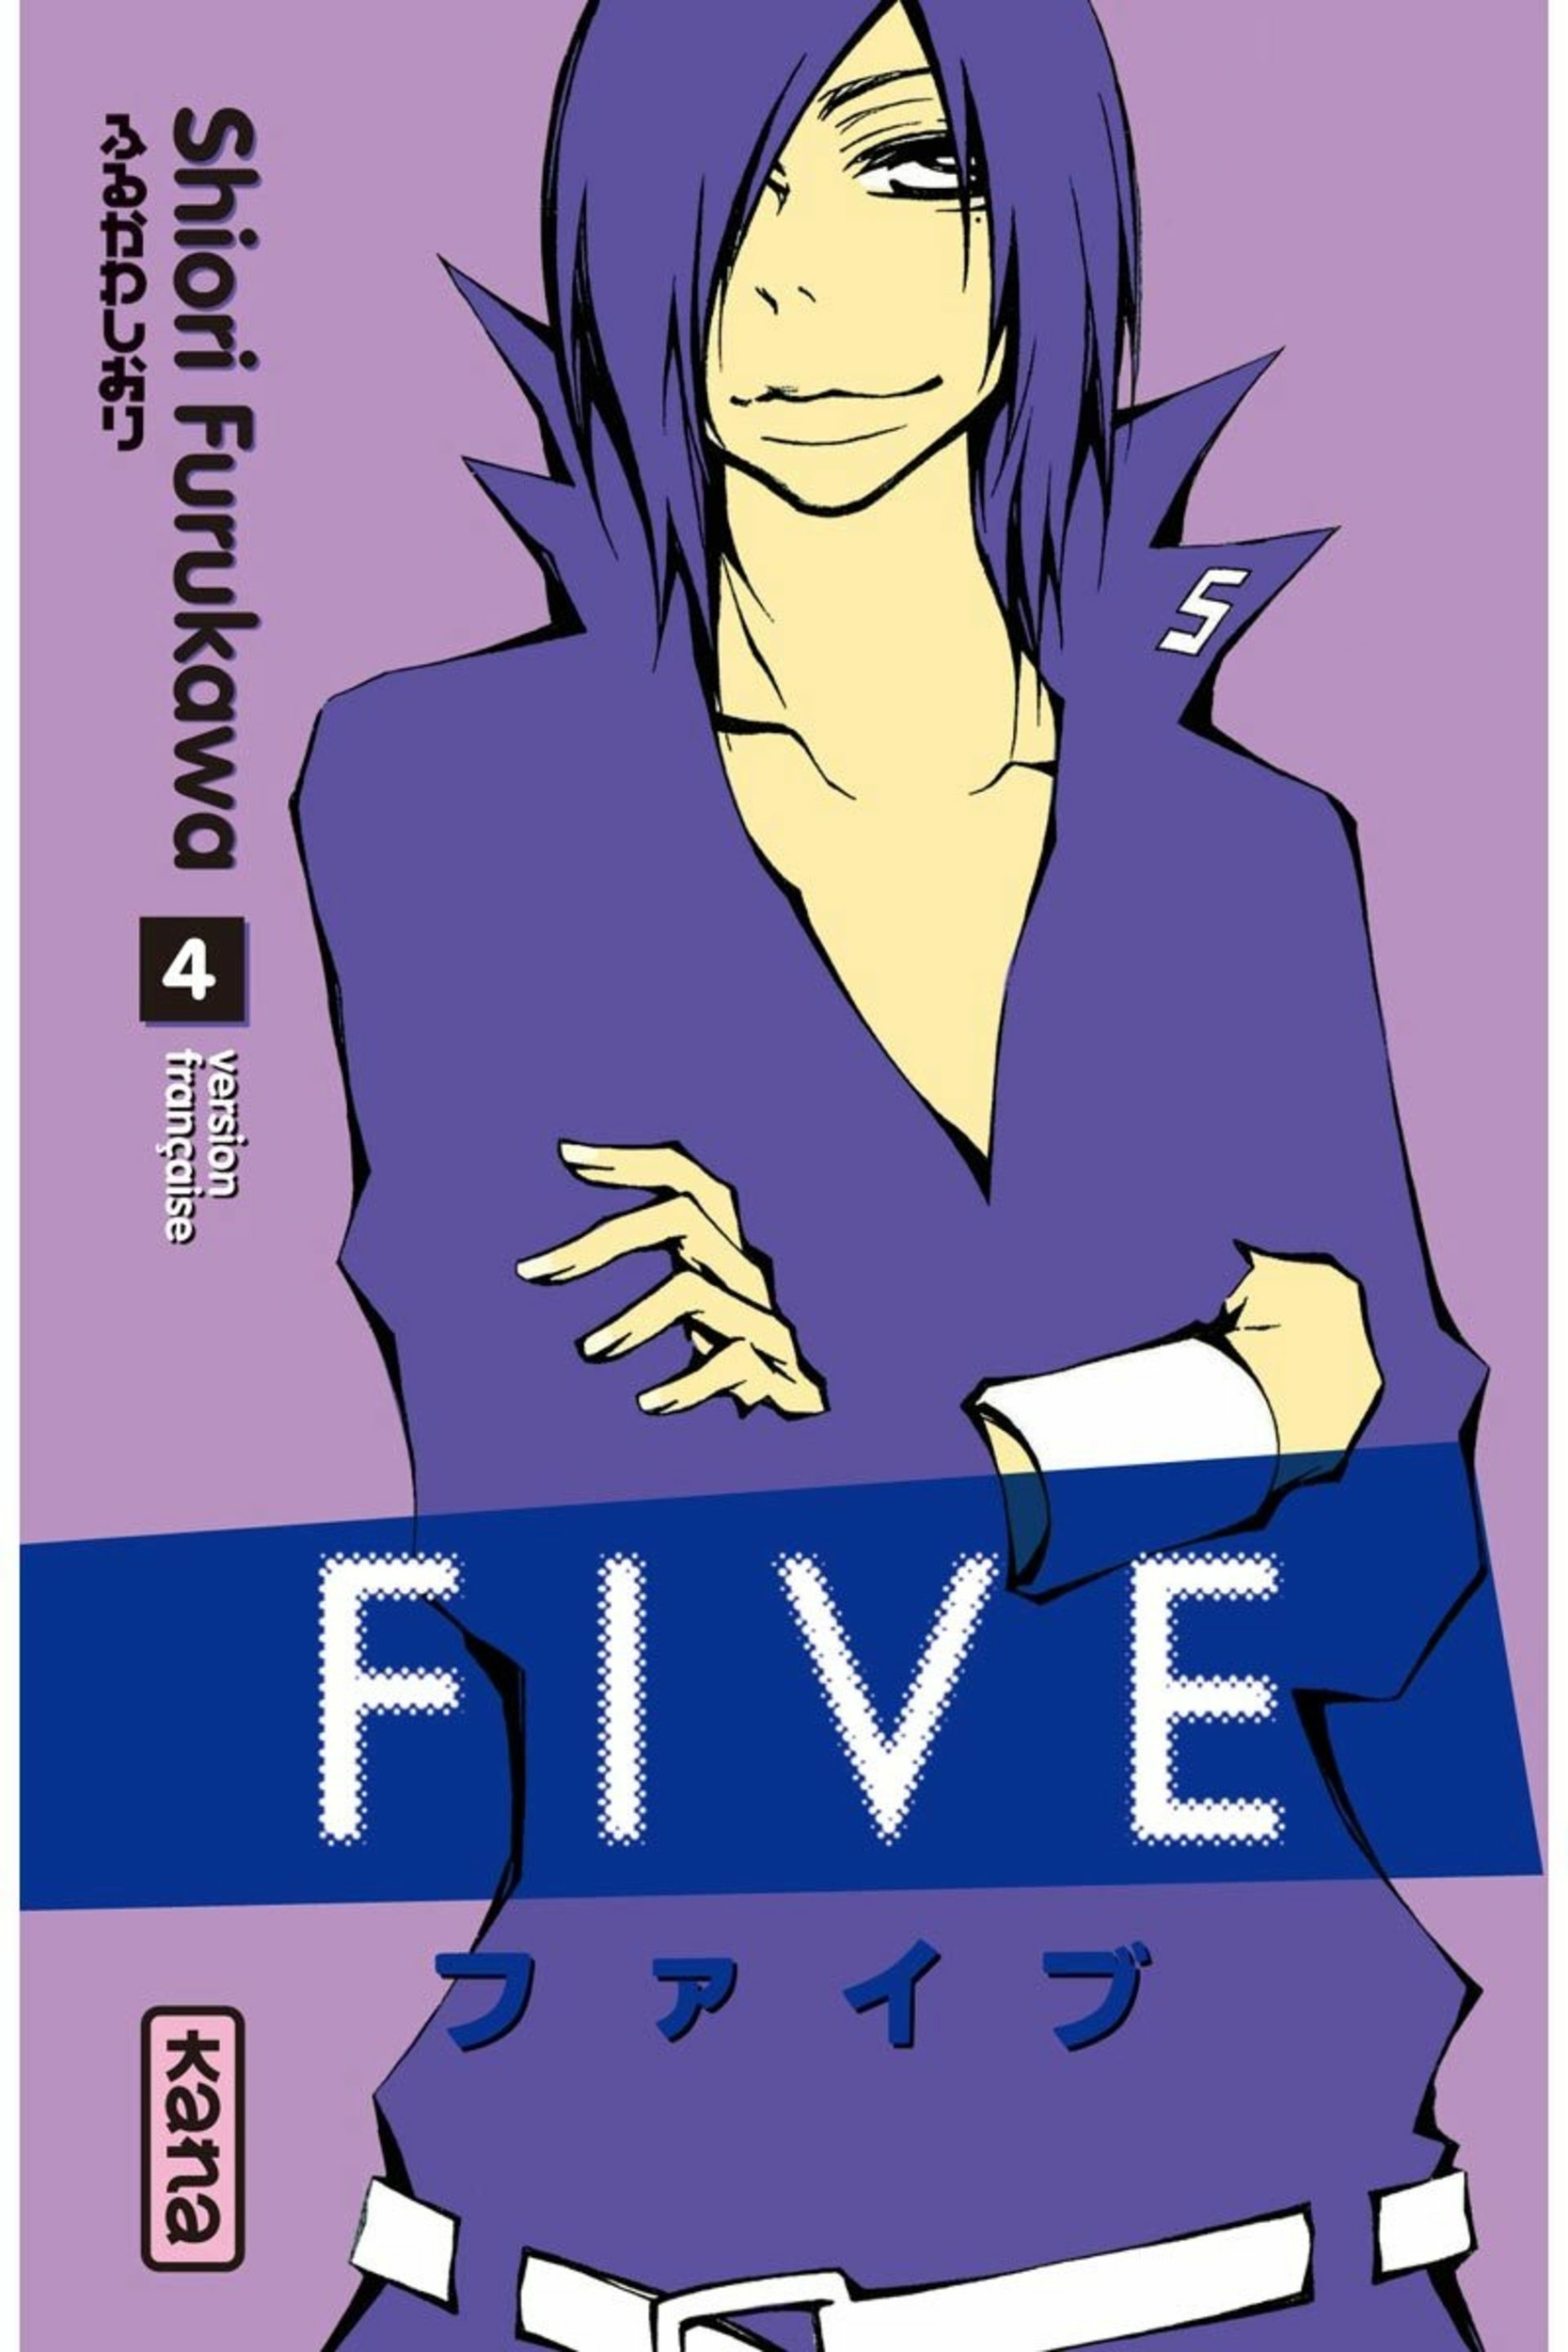 five4